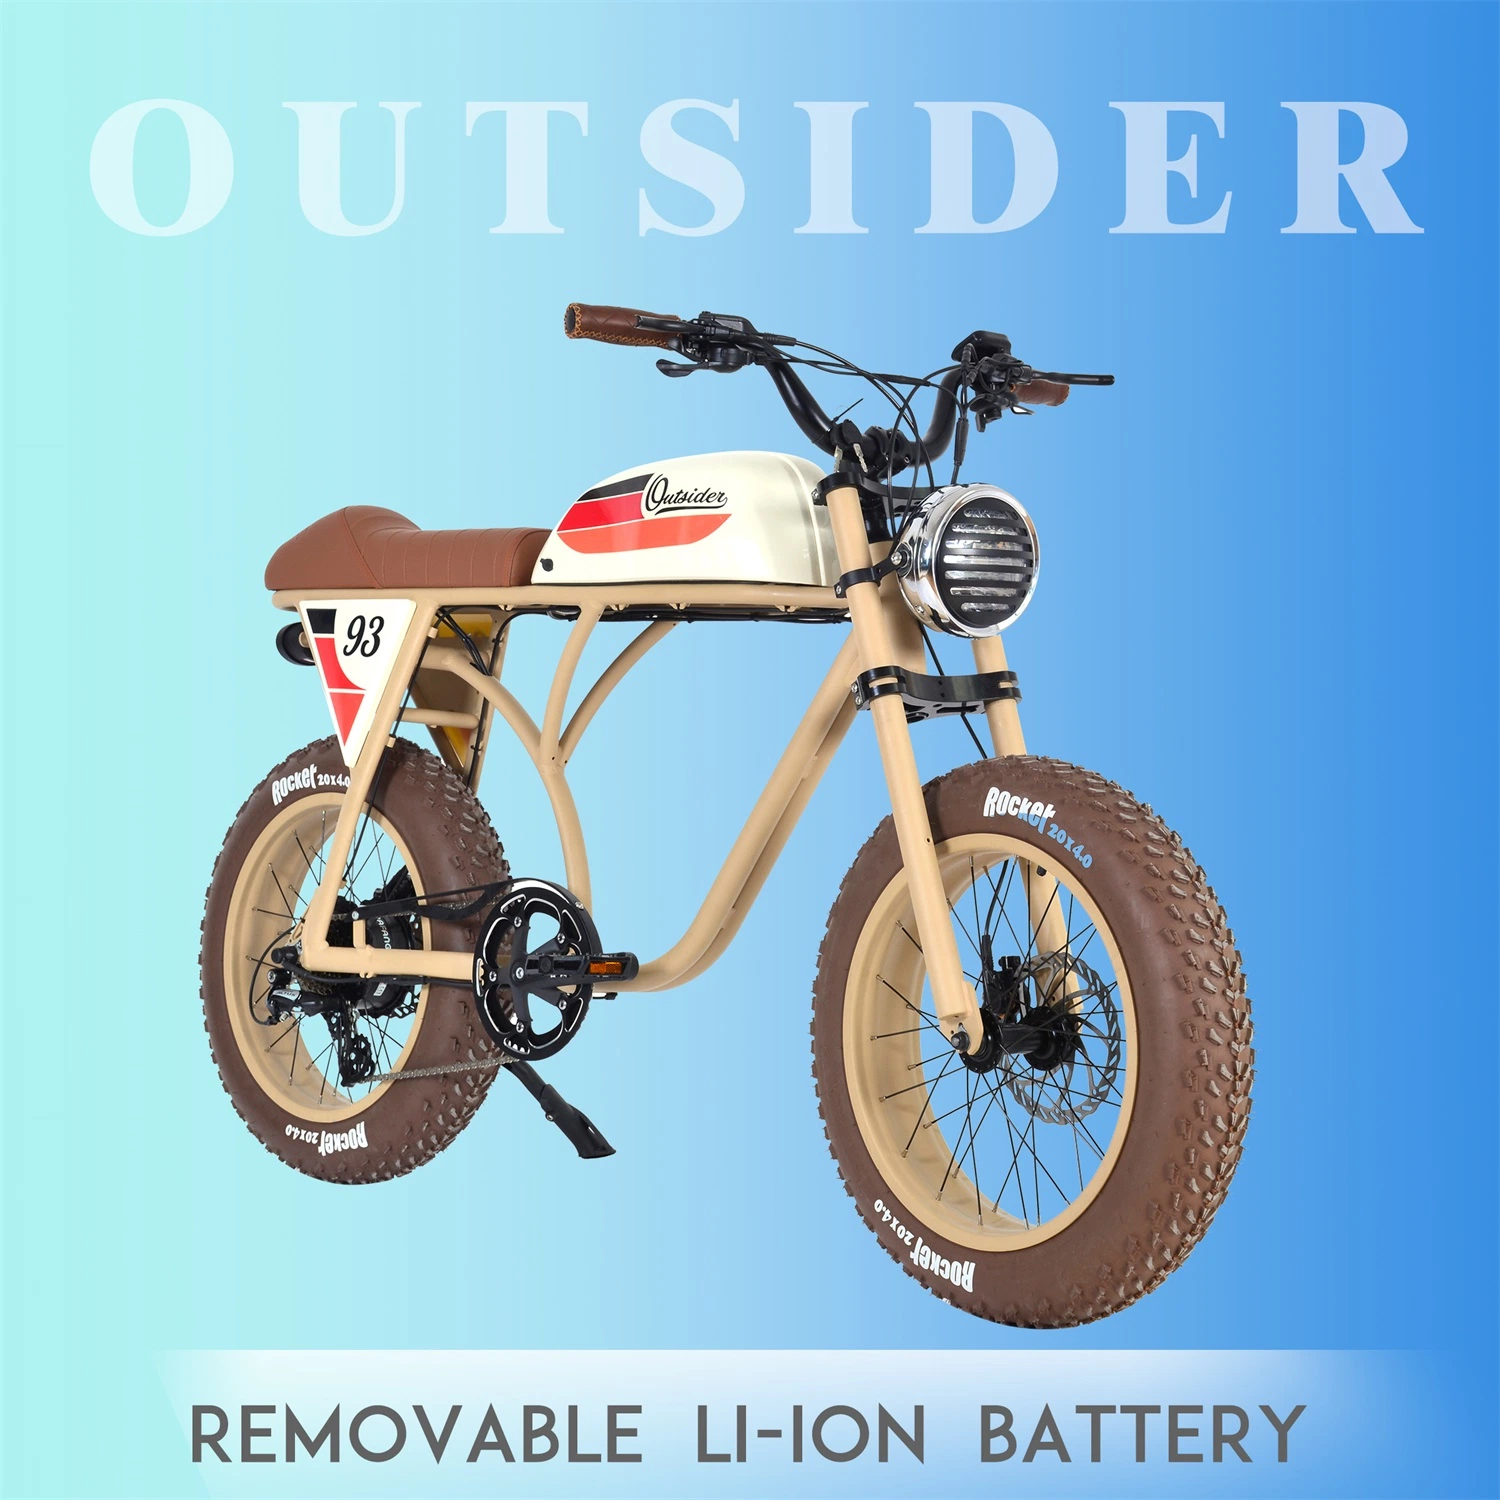 La Chine de haute qualité avec ce/CEE Ebike Electric Motorcycle avec 36 V batterie amovible au lithium-vélo électrique